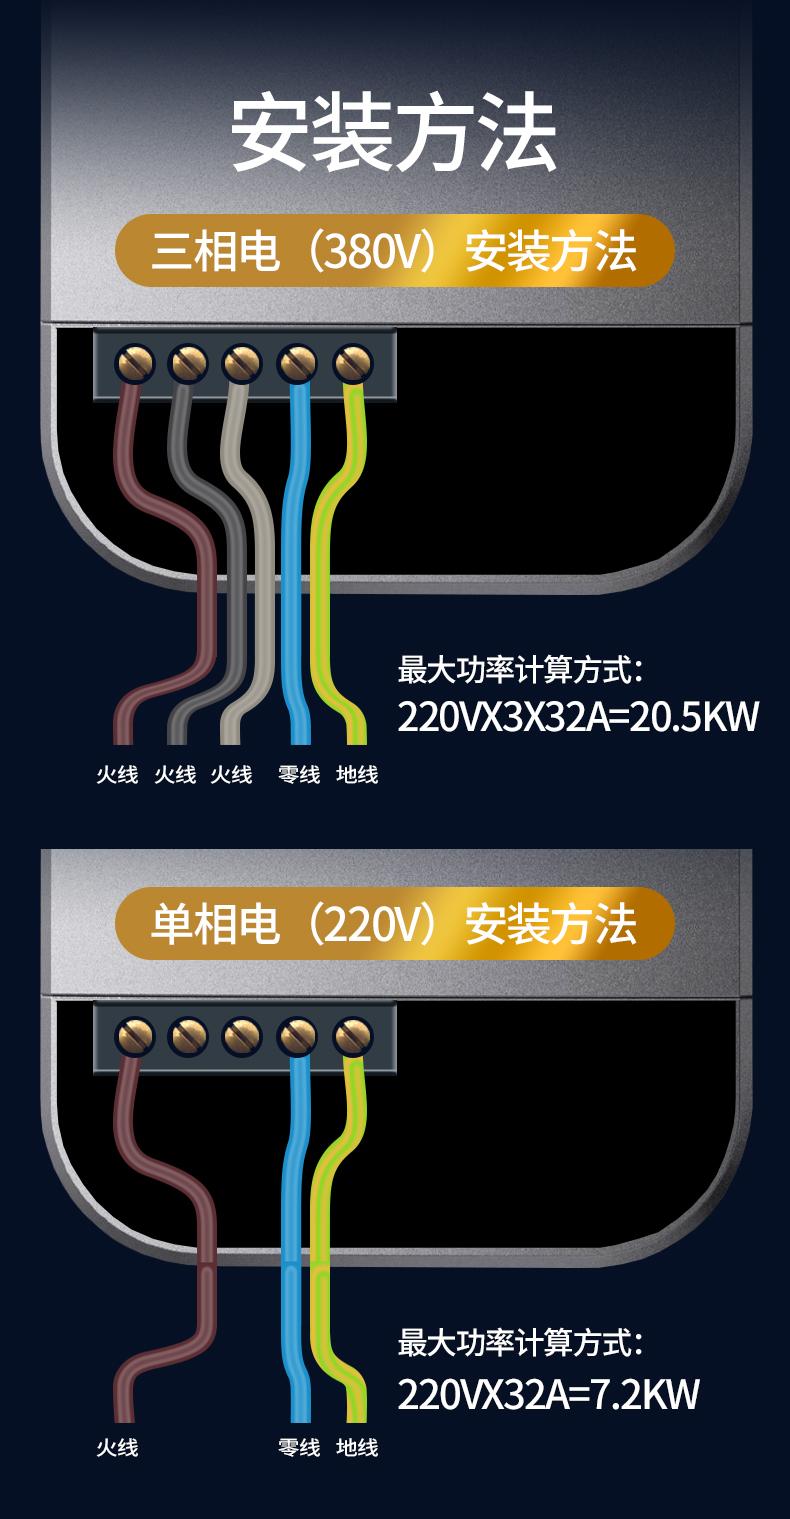 【普诺得】充电桩星空灰系列 21KW / 11KW / 7KW